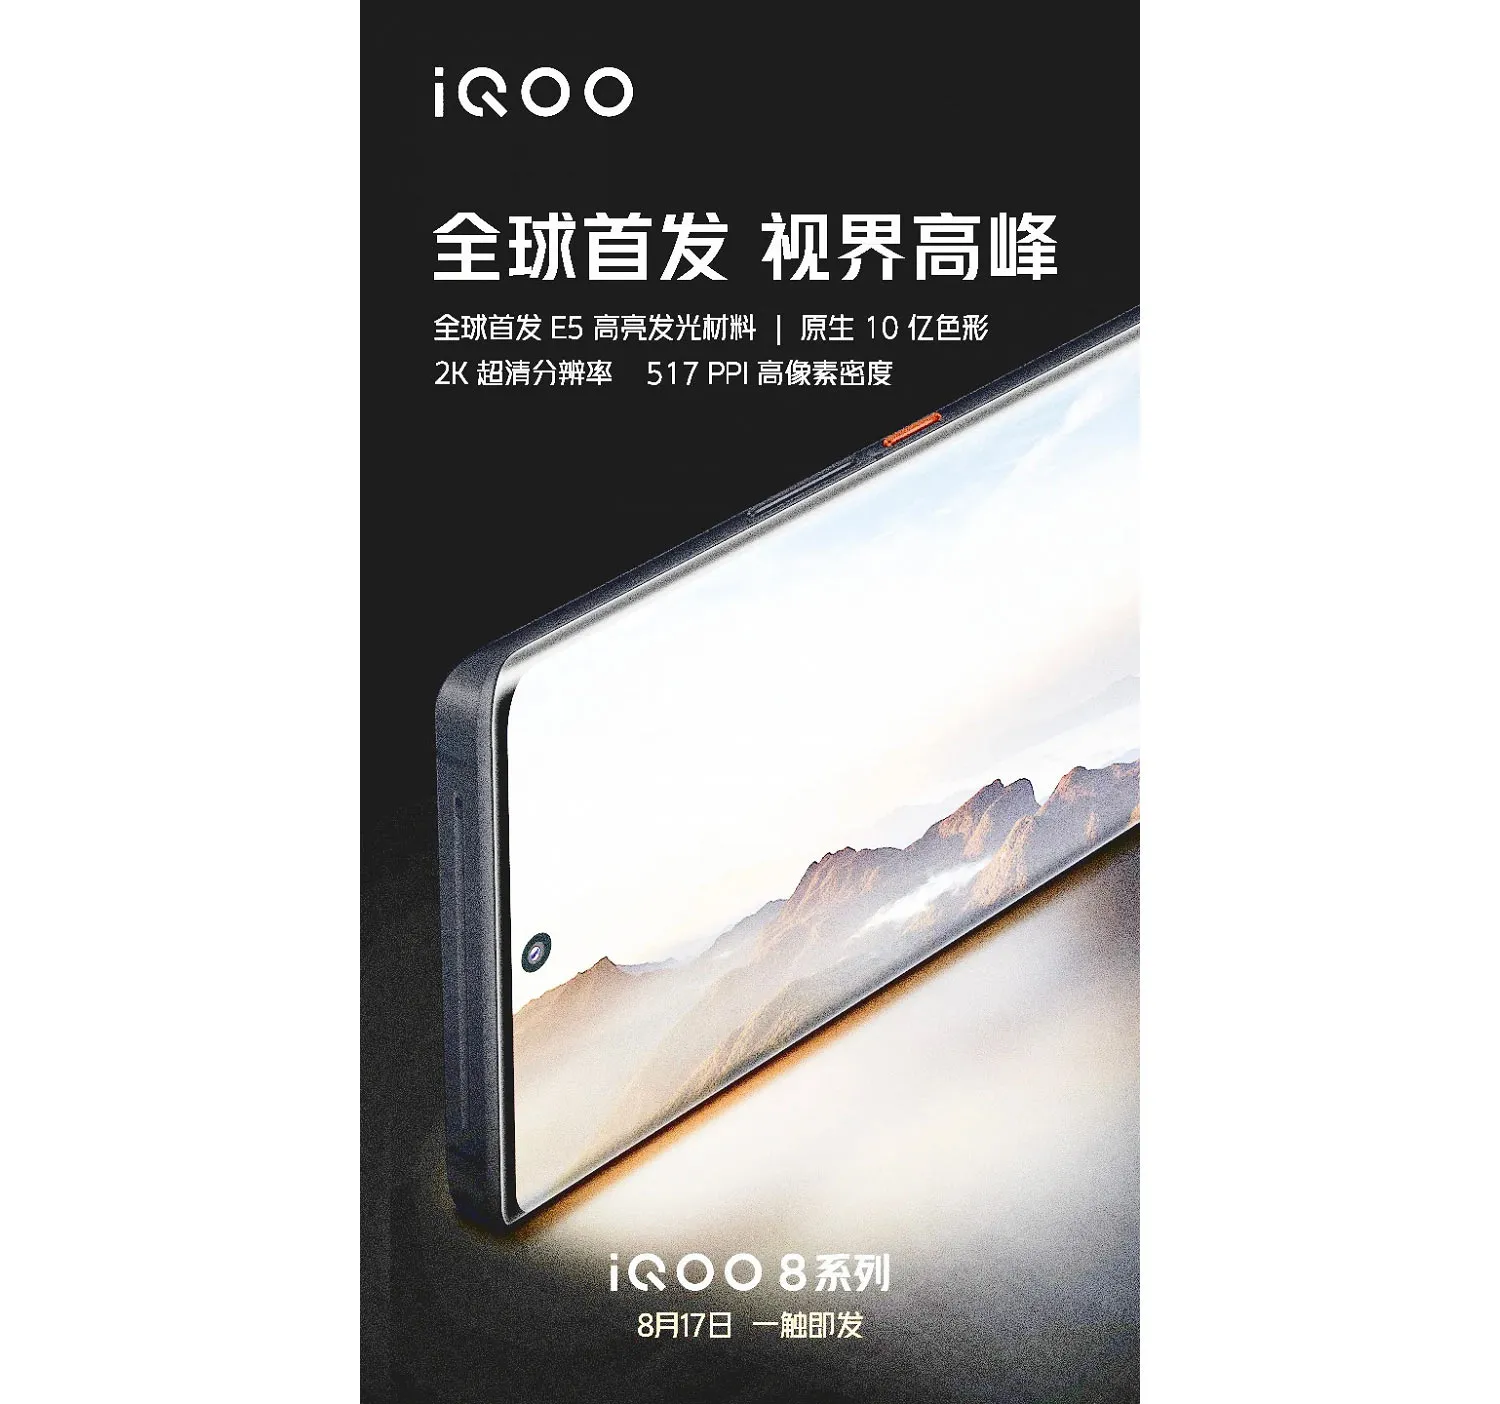 Анонсирован смартфон IQOO с экраном Samsung E5 и чипом Snapdragon 888+